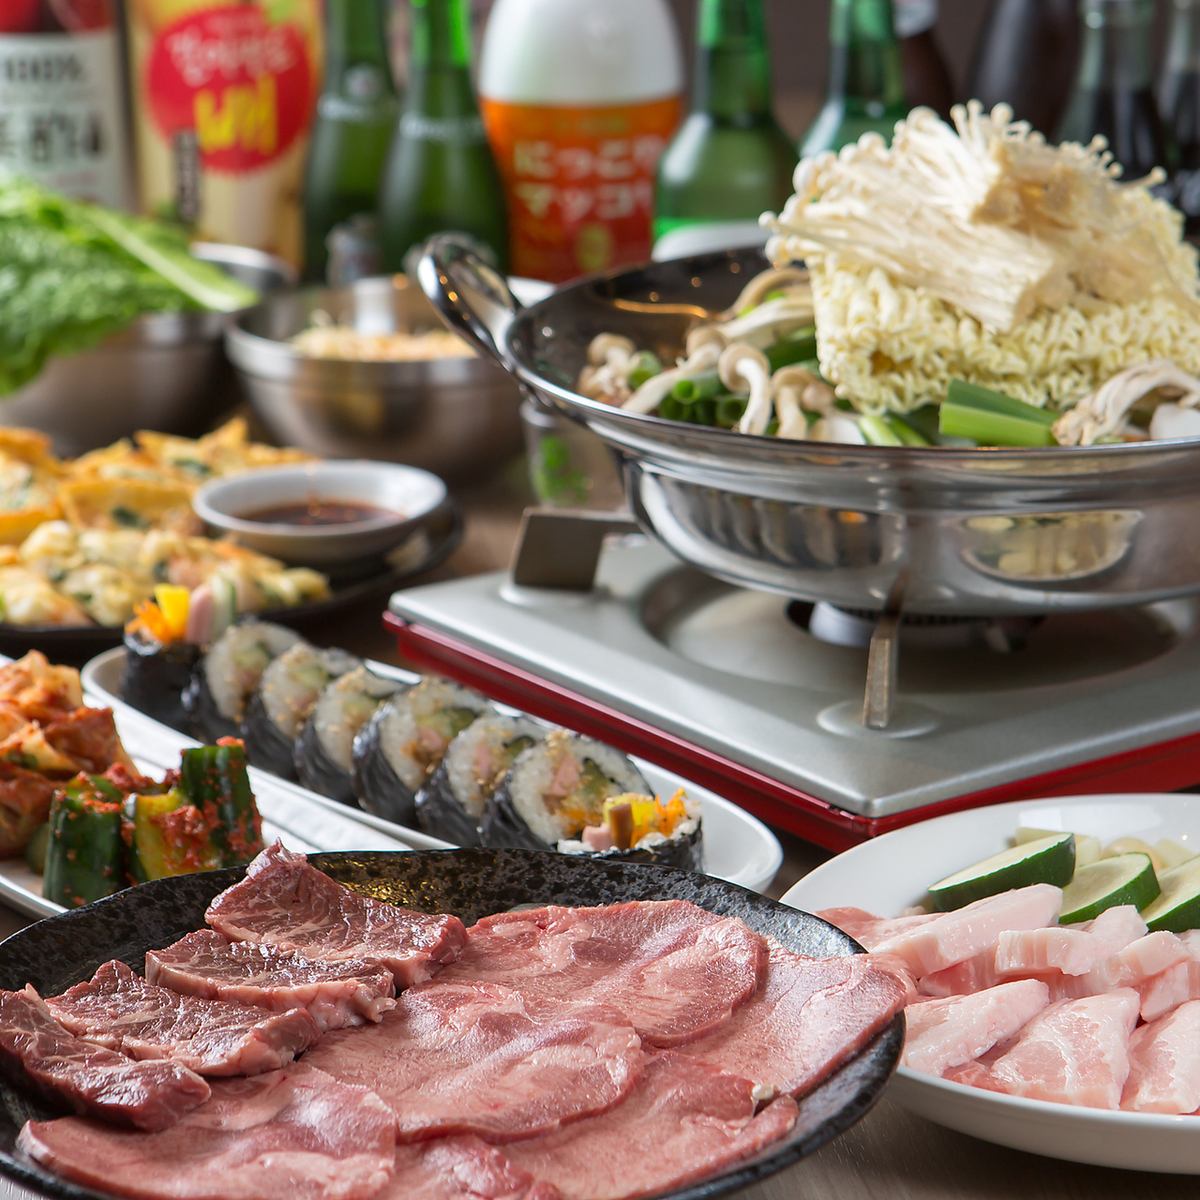 我们提供种类繁多的韩国食品和饮料。